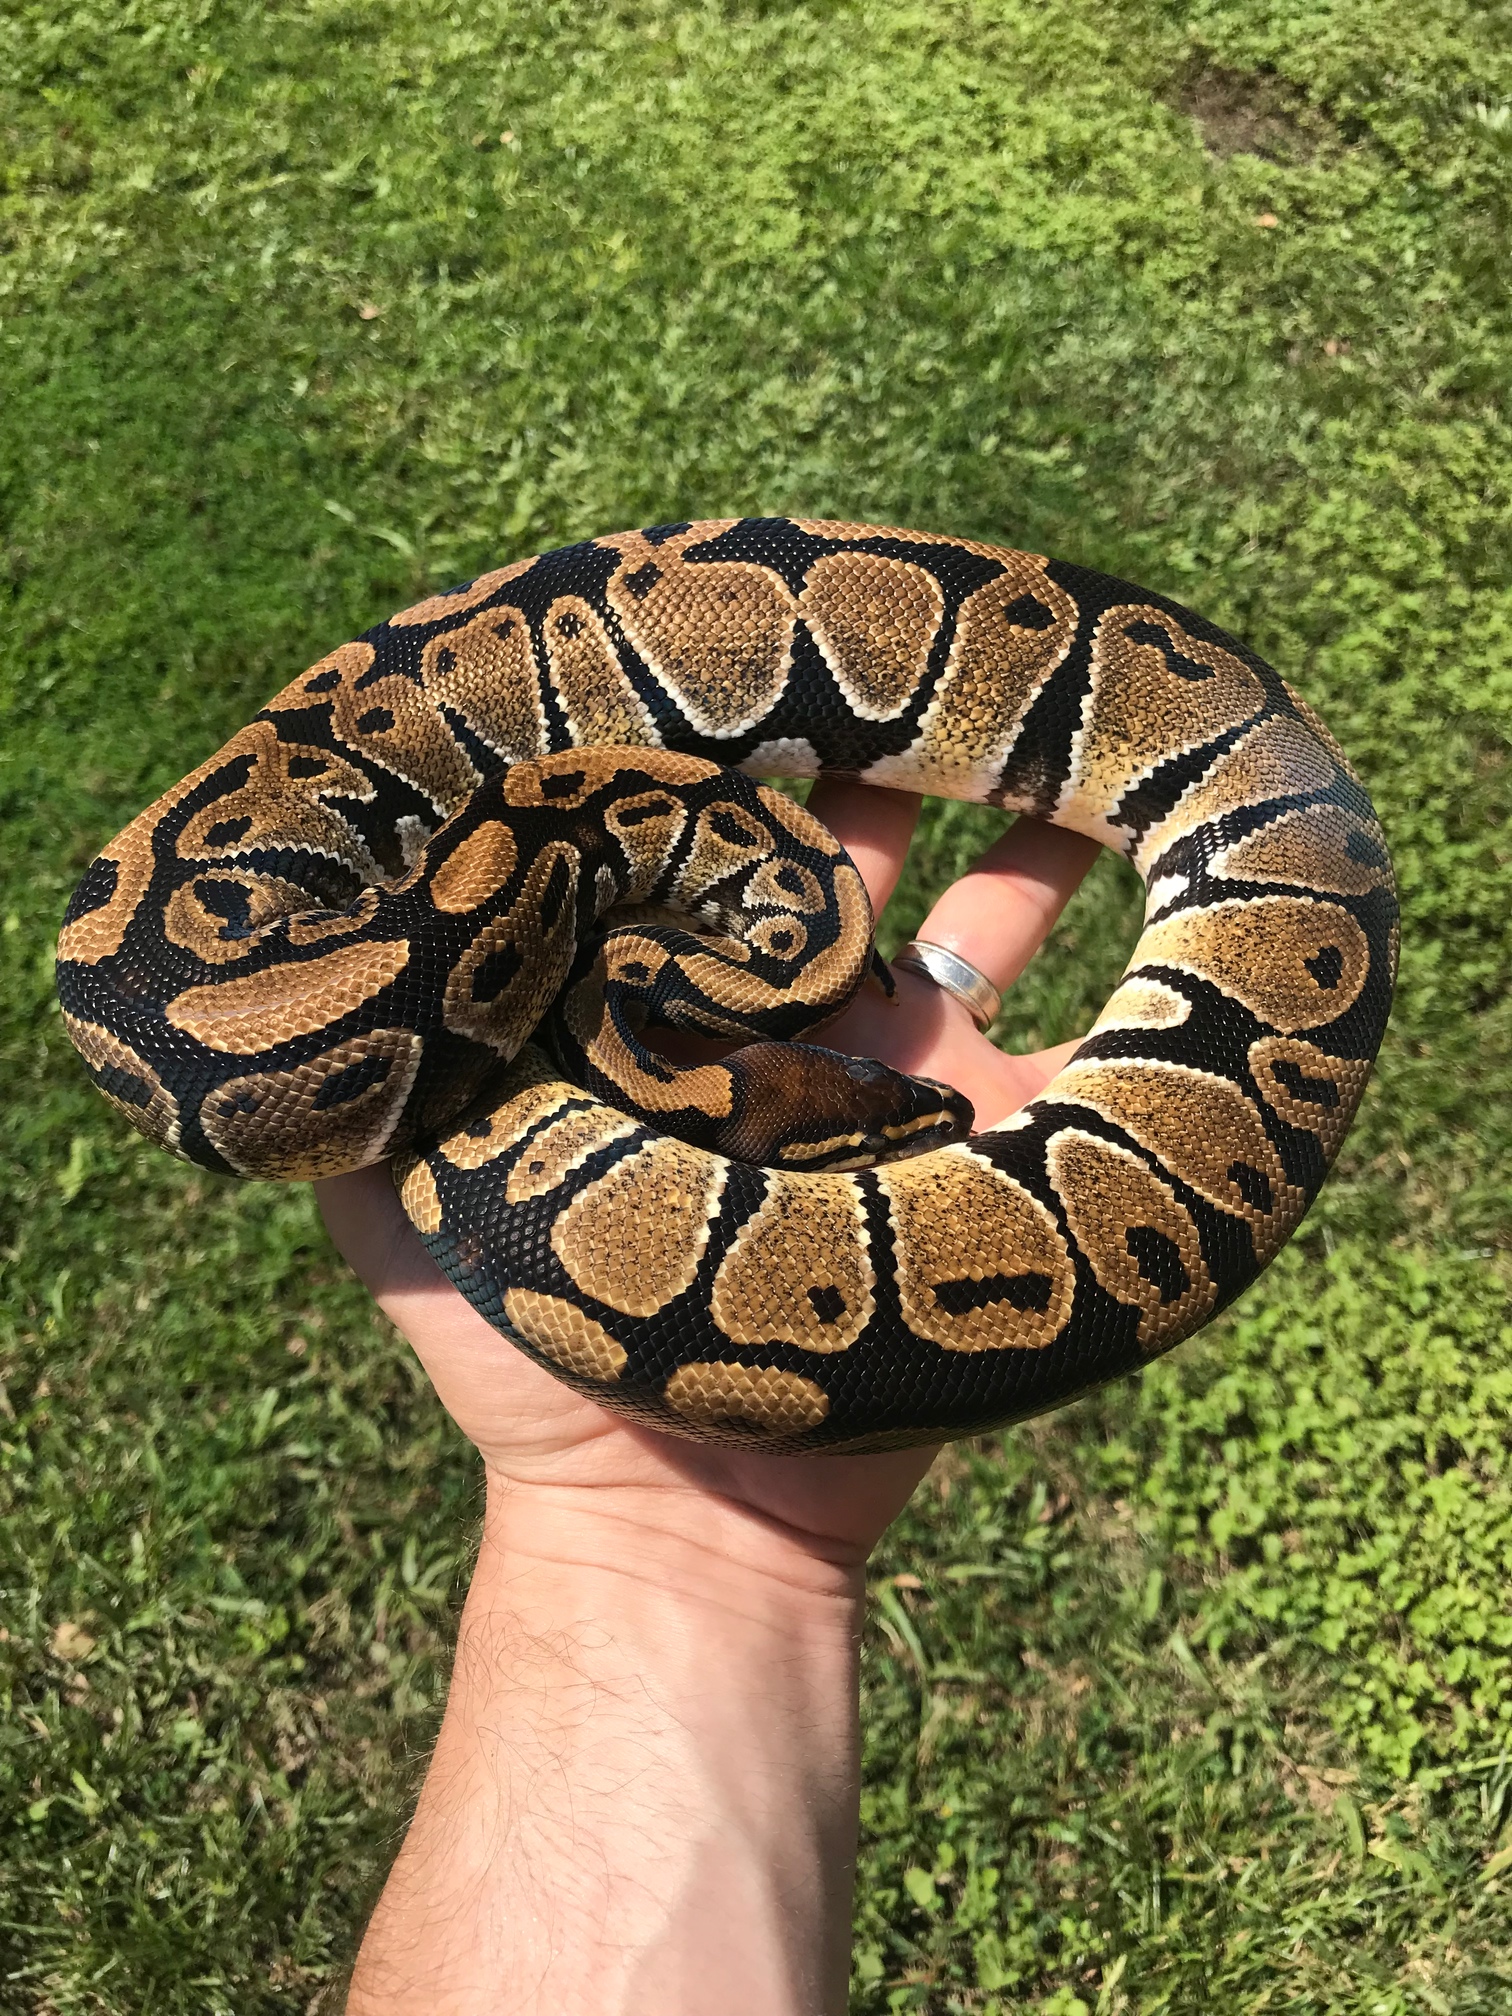 NR Mandarin Ball Python by The Florida Reptile Ranch